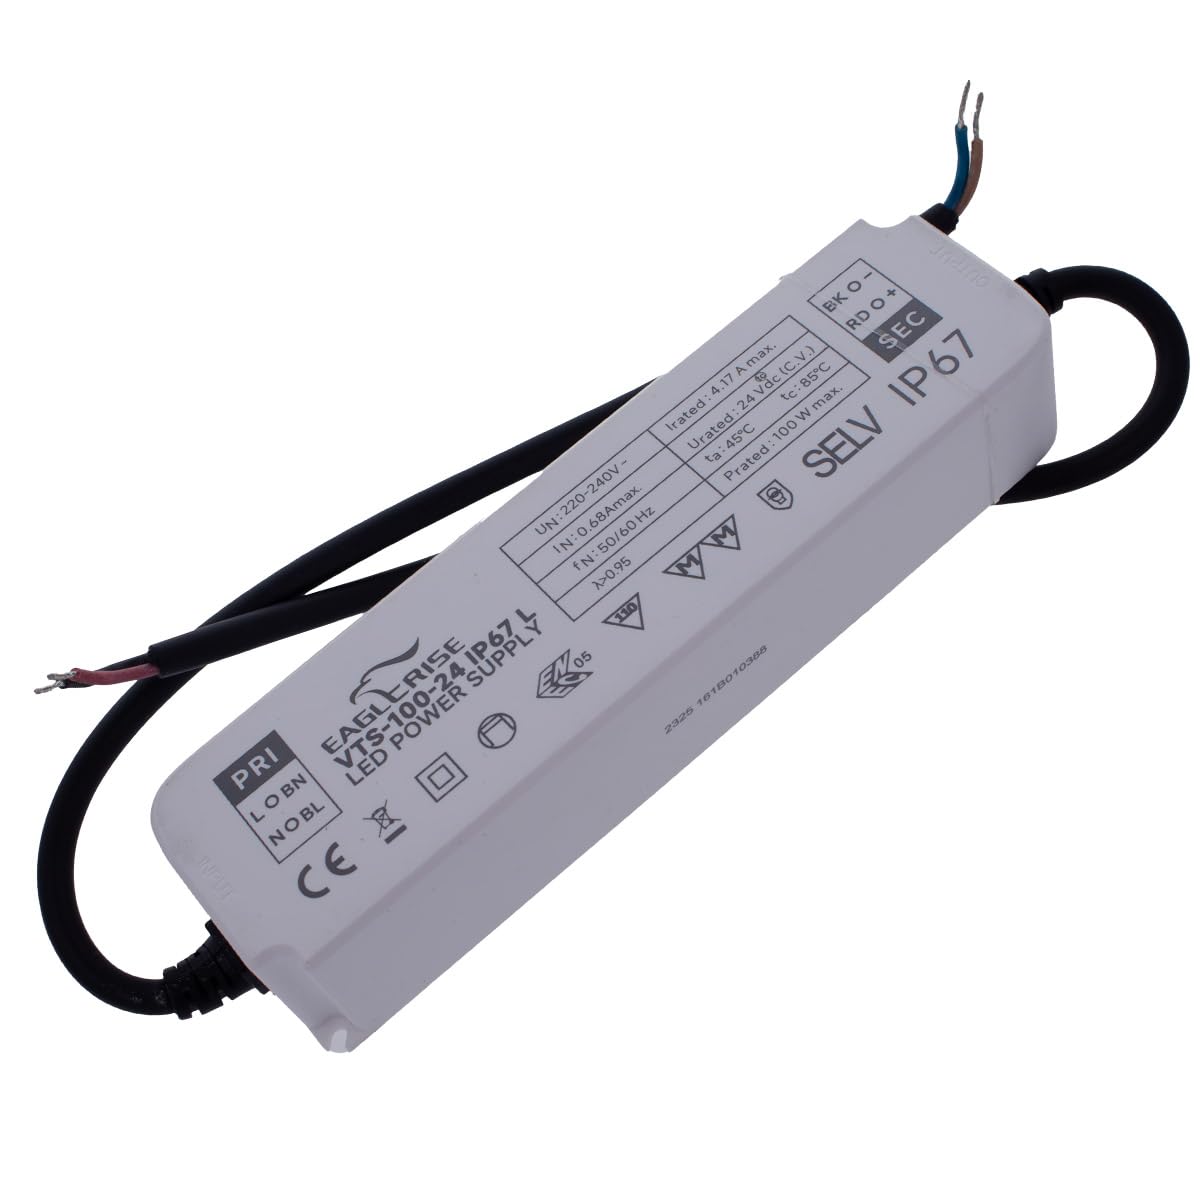 LED-Netzteil, 24 V, ENEC zertifiziert, perfekter und zuverlässiger Trafo für LED-Streifen, wasserdicht IP67 (Output: 100 W, 24 V, 4,17 A)